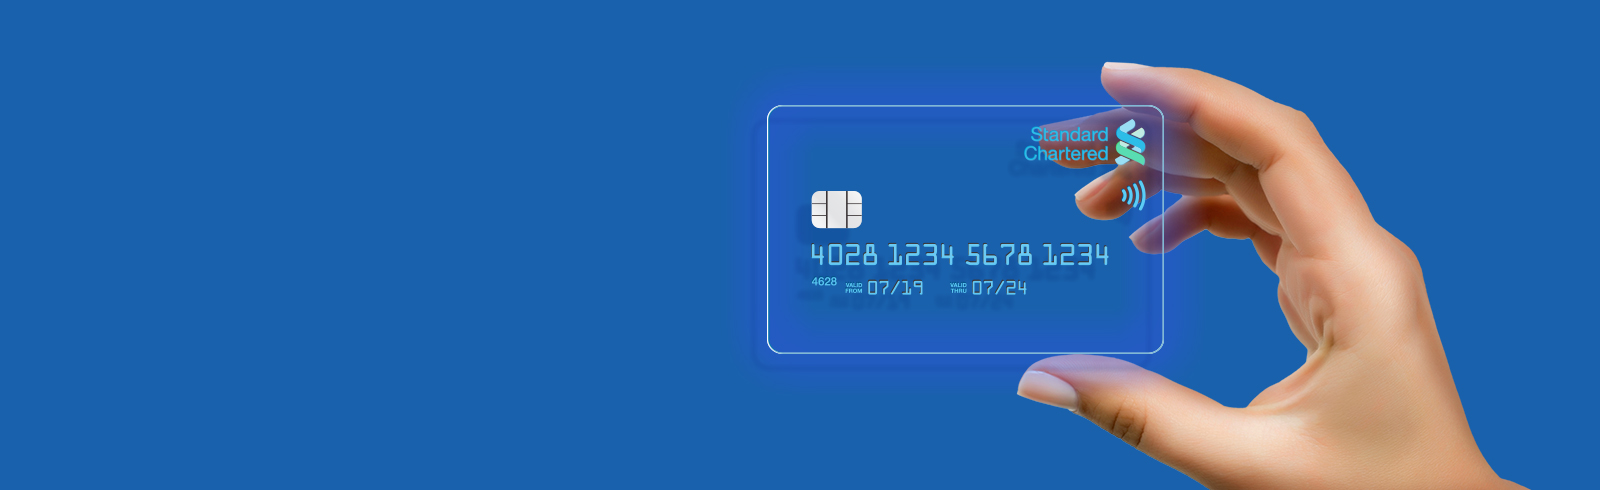 Virtual Credit Card Malaysia